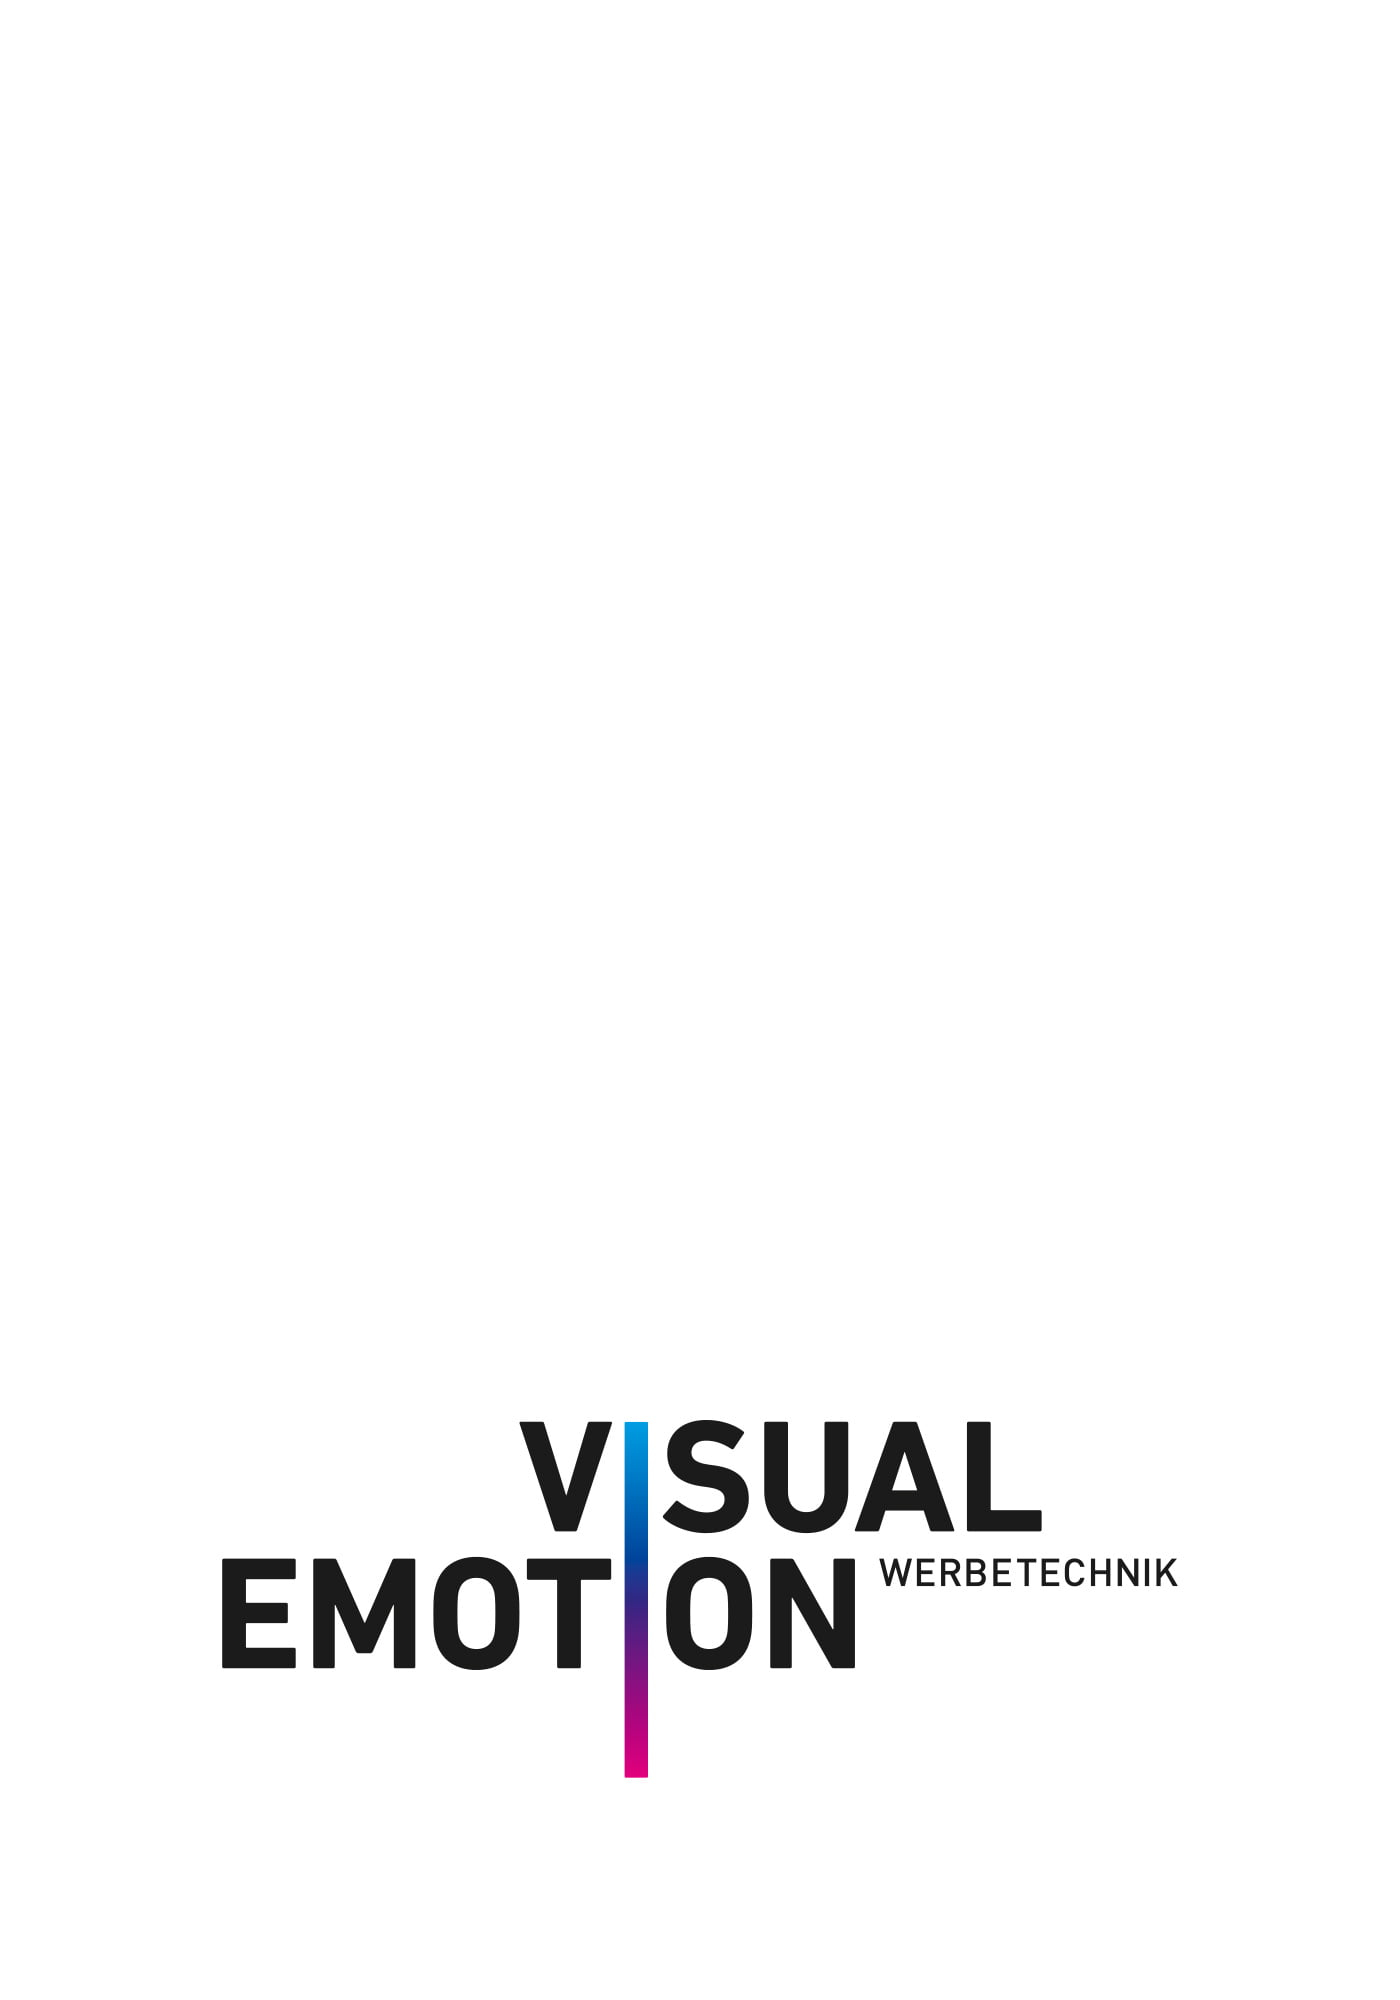 VisualEmotion_Startseite-Neuauftritt_Bilder-Vorbereitung